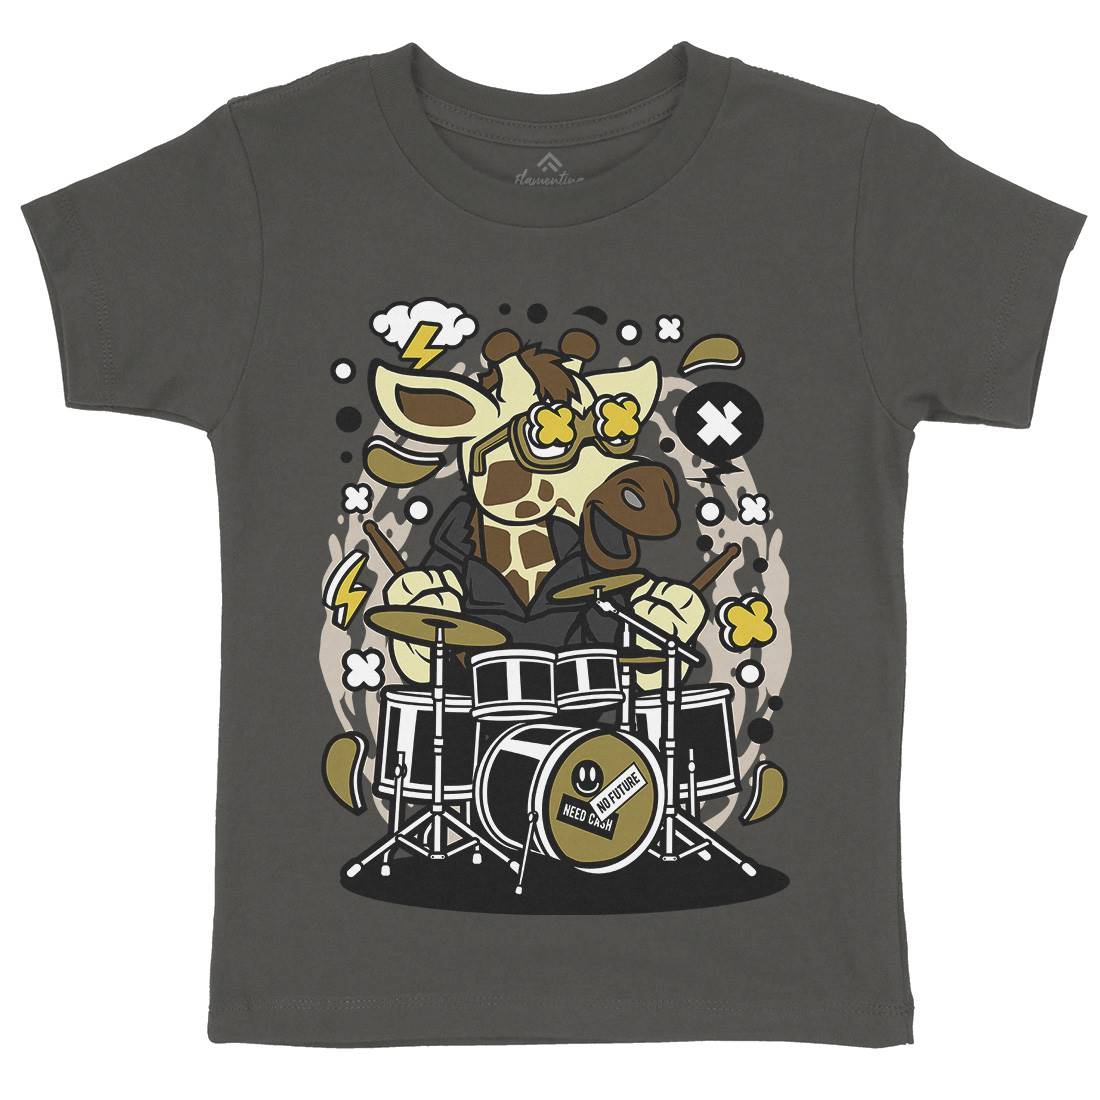 Giraffe Drummer Kids Crew Neck T-Shirt Music C552